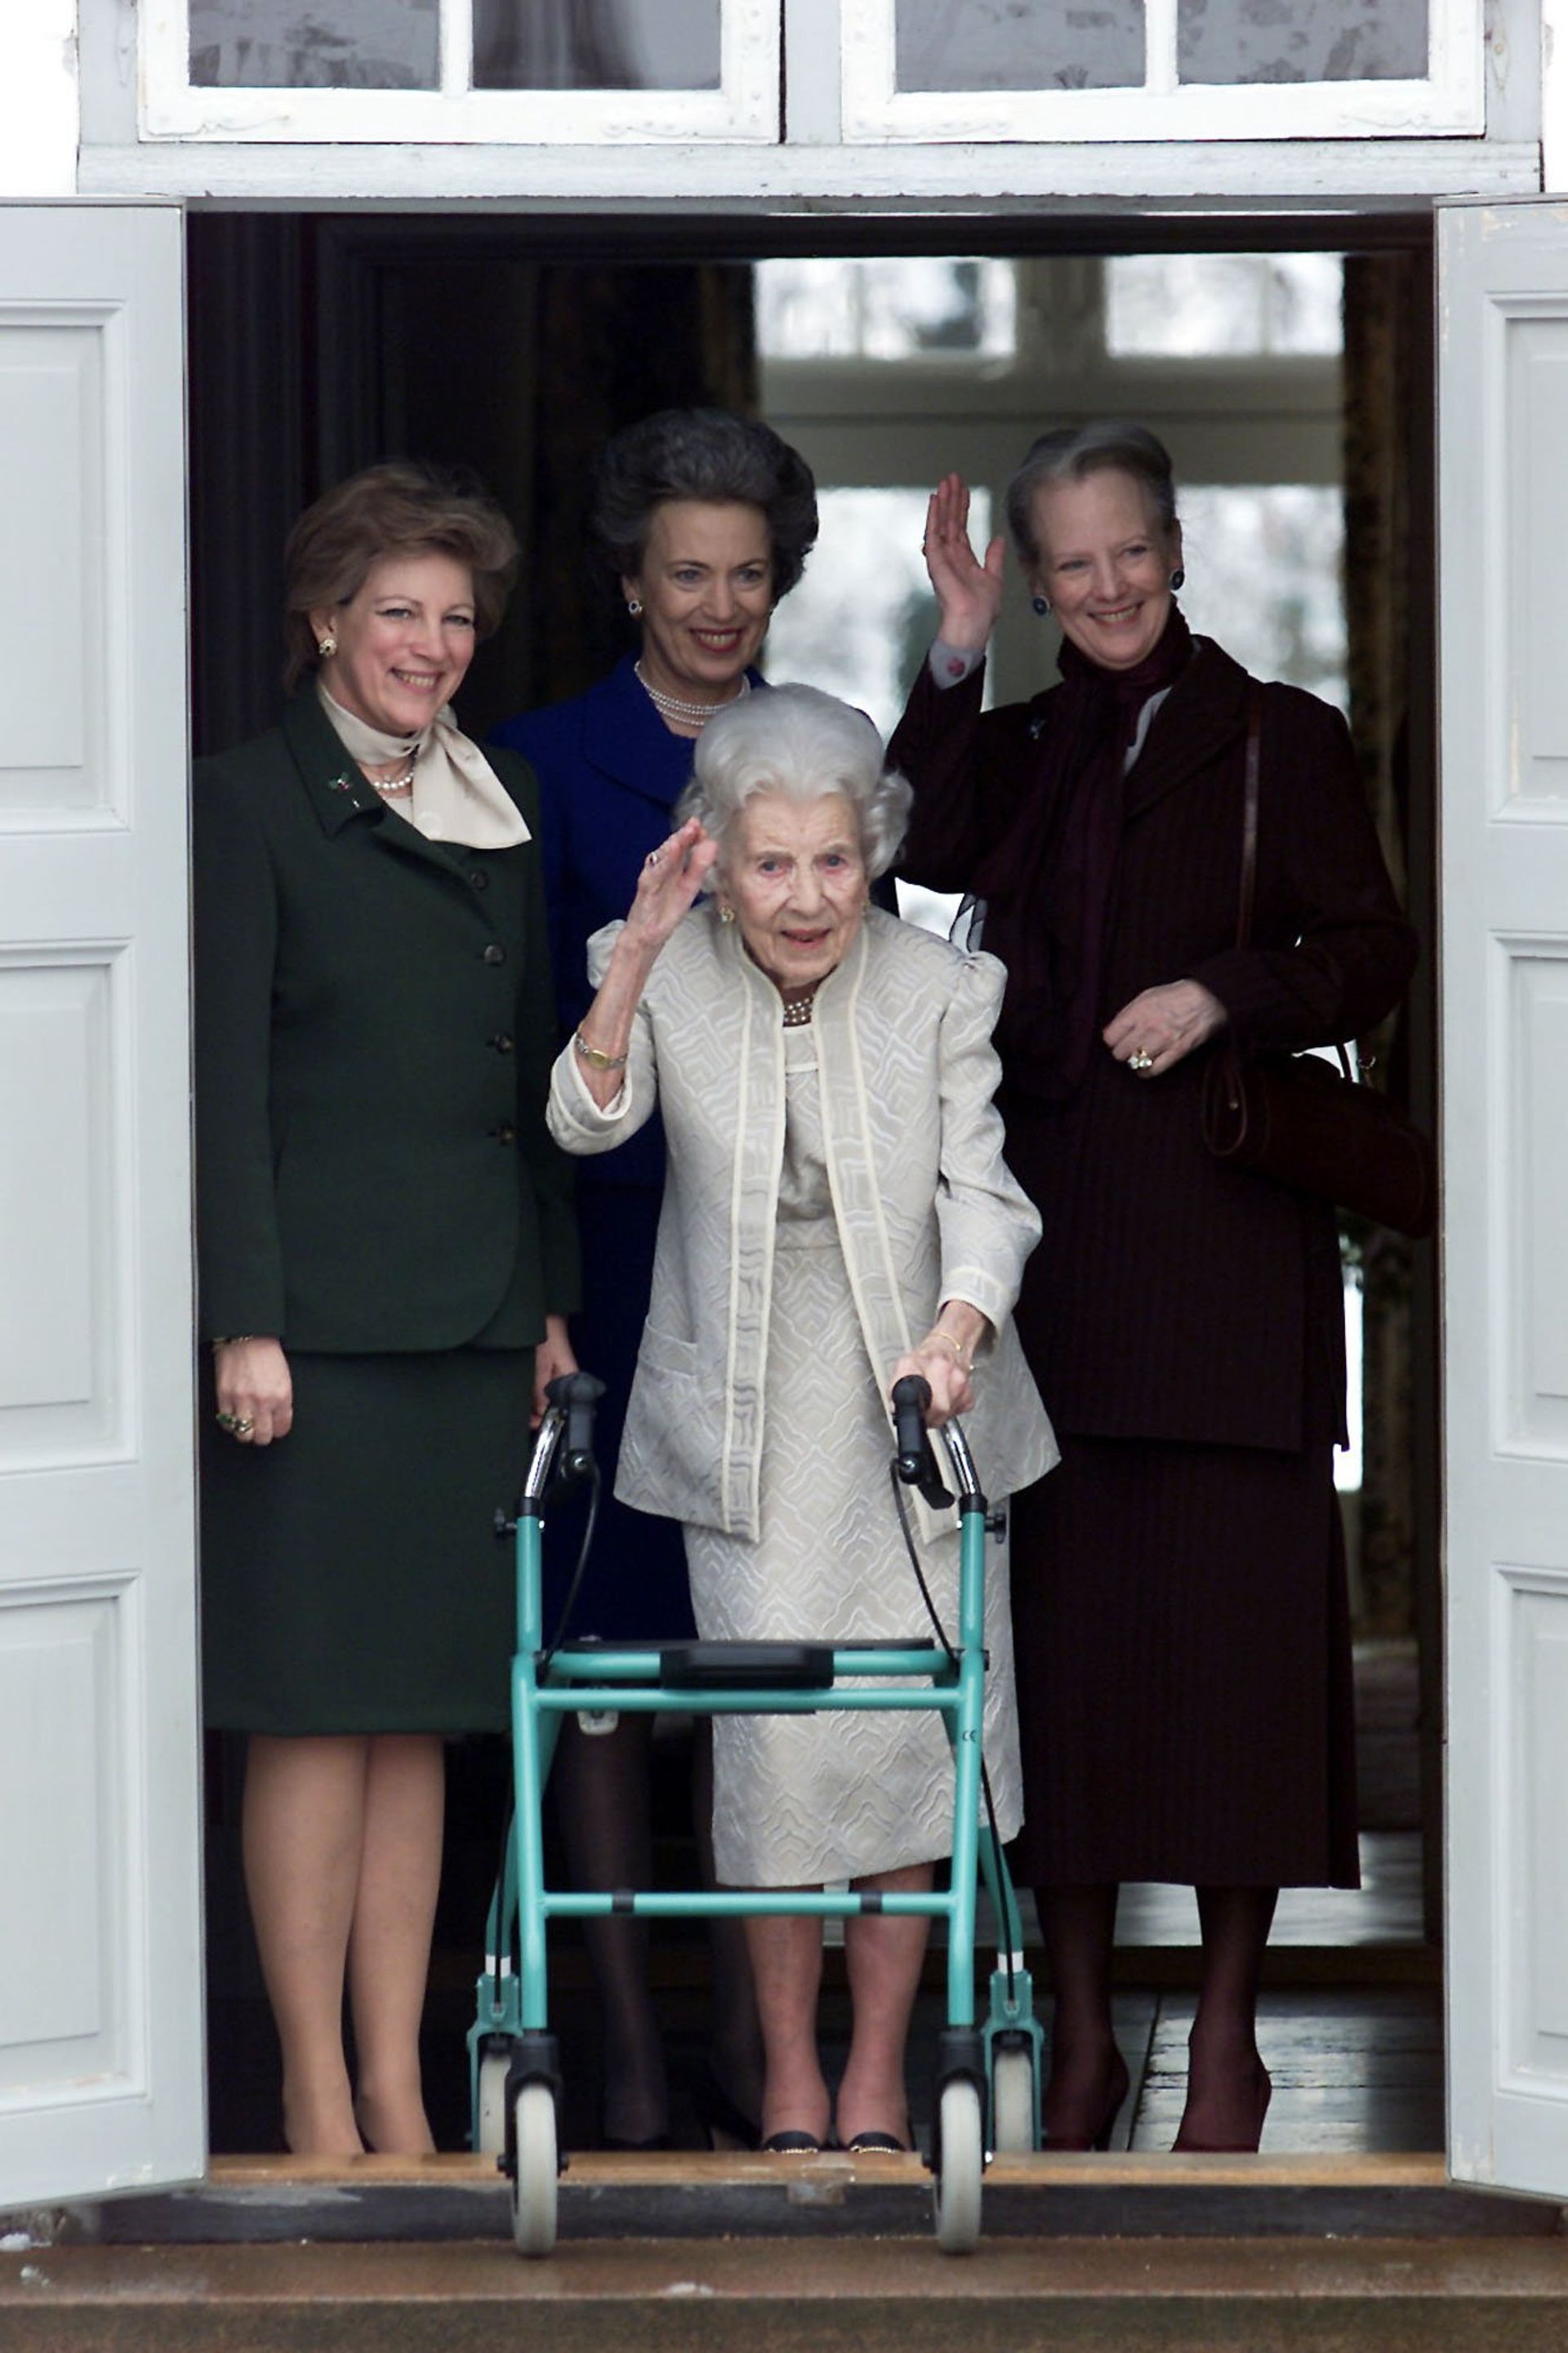 Benedikte met haar zussen en moeder. Enkele maanden later, op 7 november 2000, overlijdt de Deense koningin-moeder Ingrid.